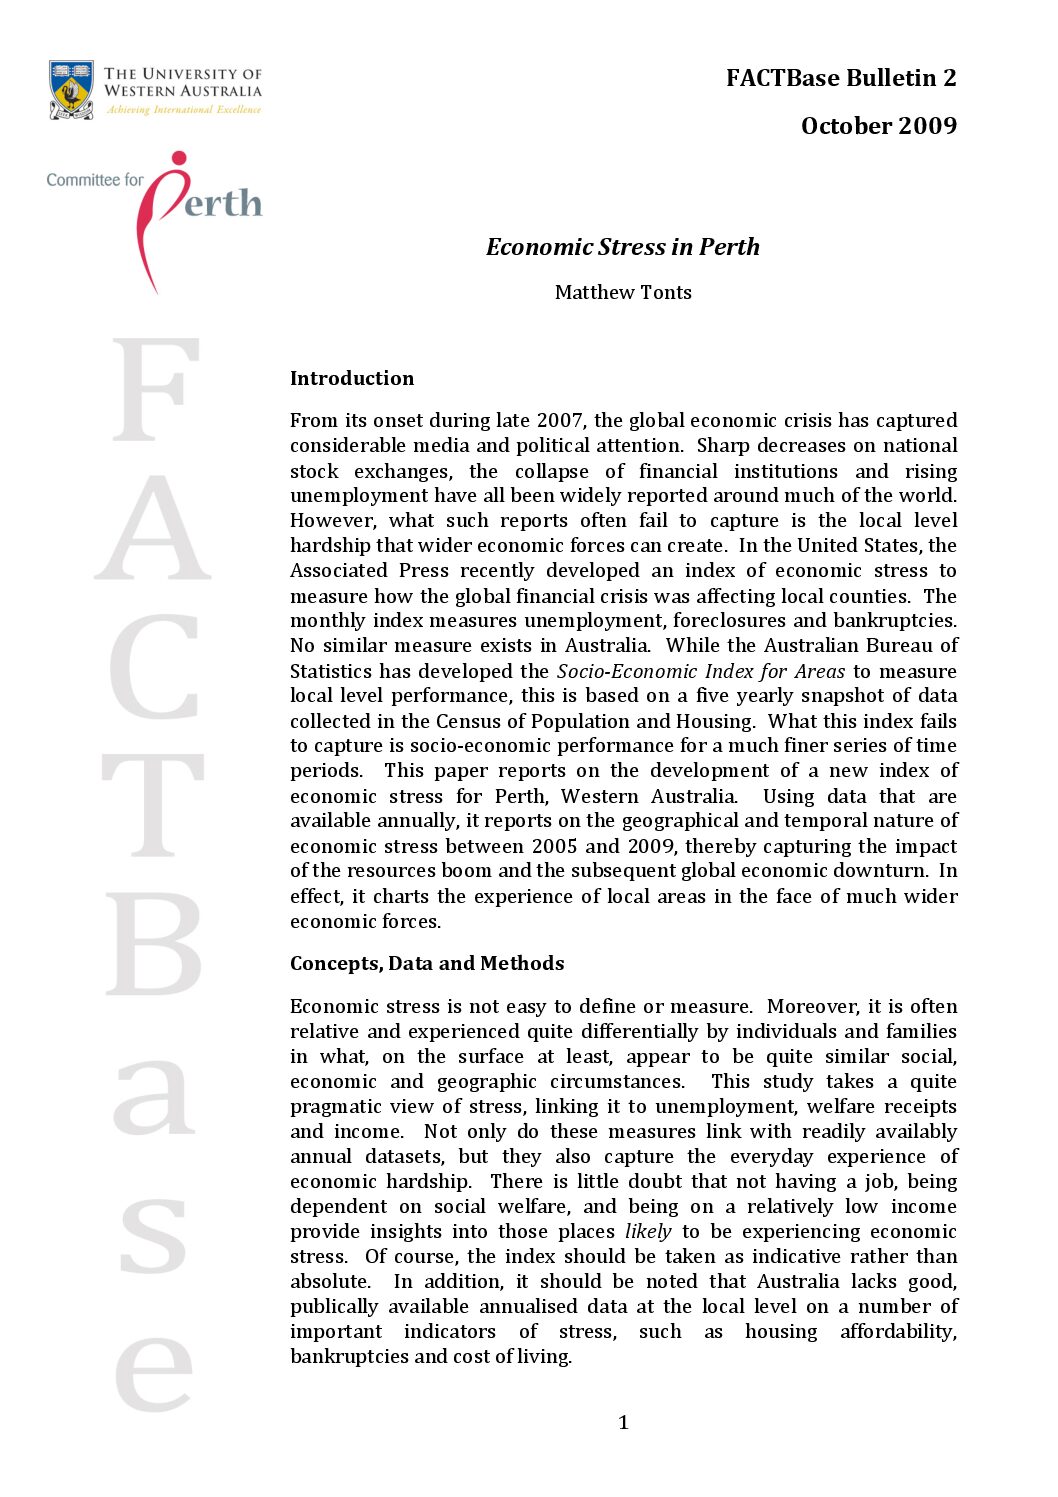 FACTBase Bulletin 2 - October 2009